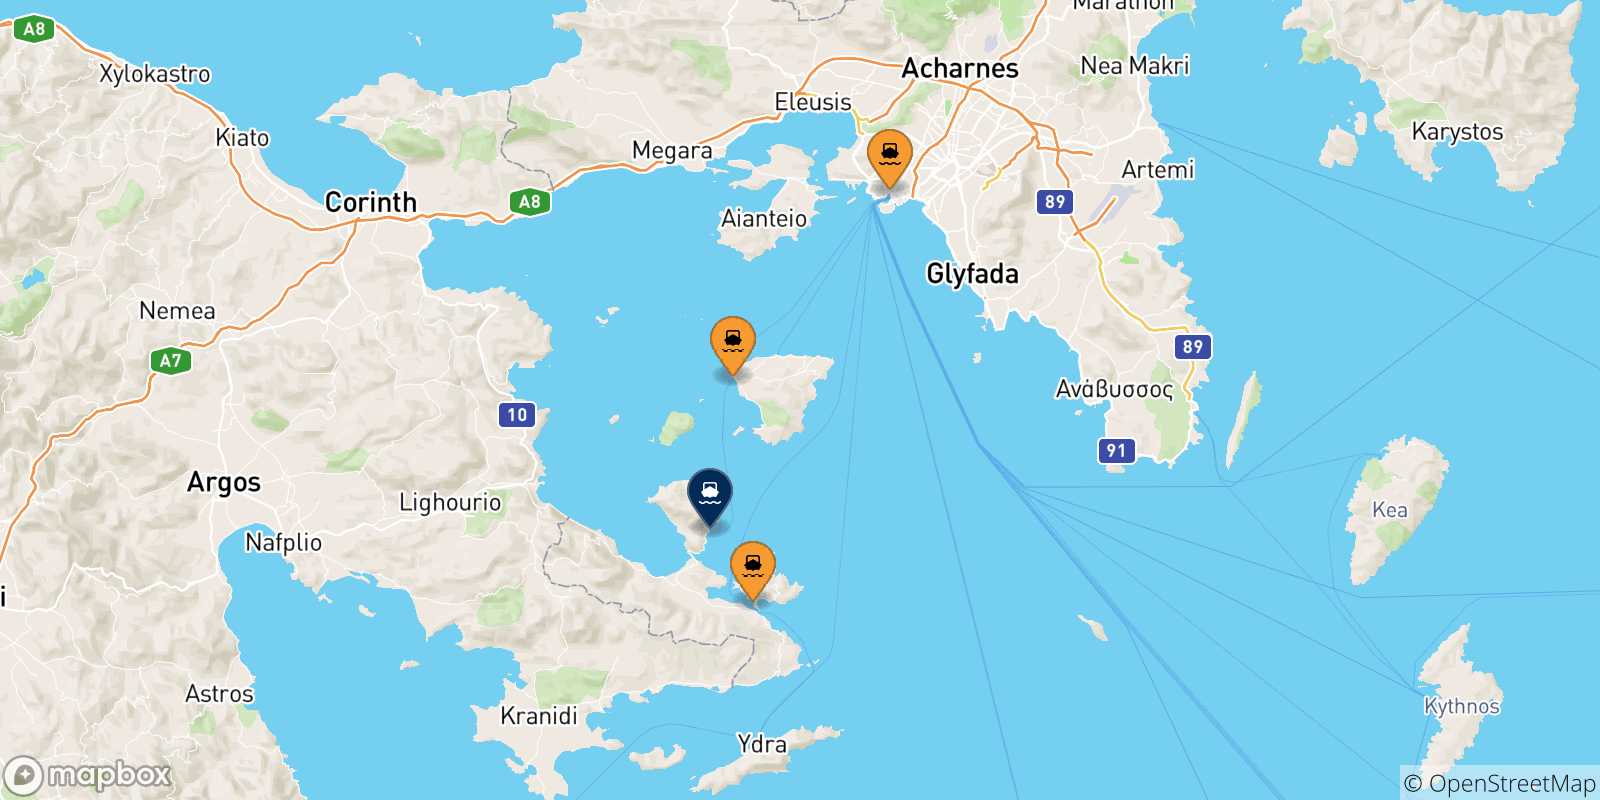 Mappa delle possibili rotte tra la Grecia e Methana